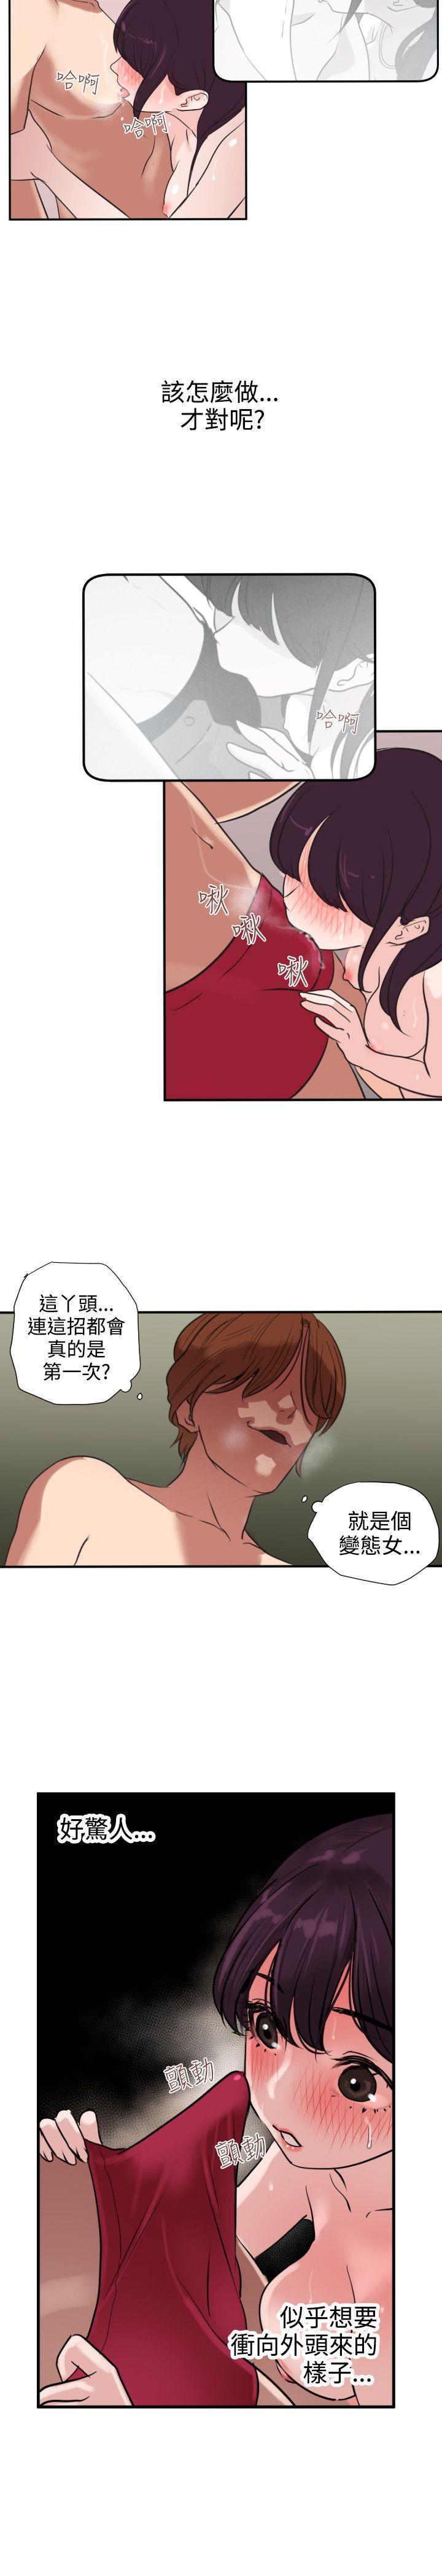 韩国污漫画 欲求王 第2话 18